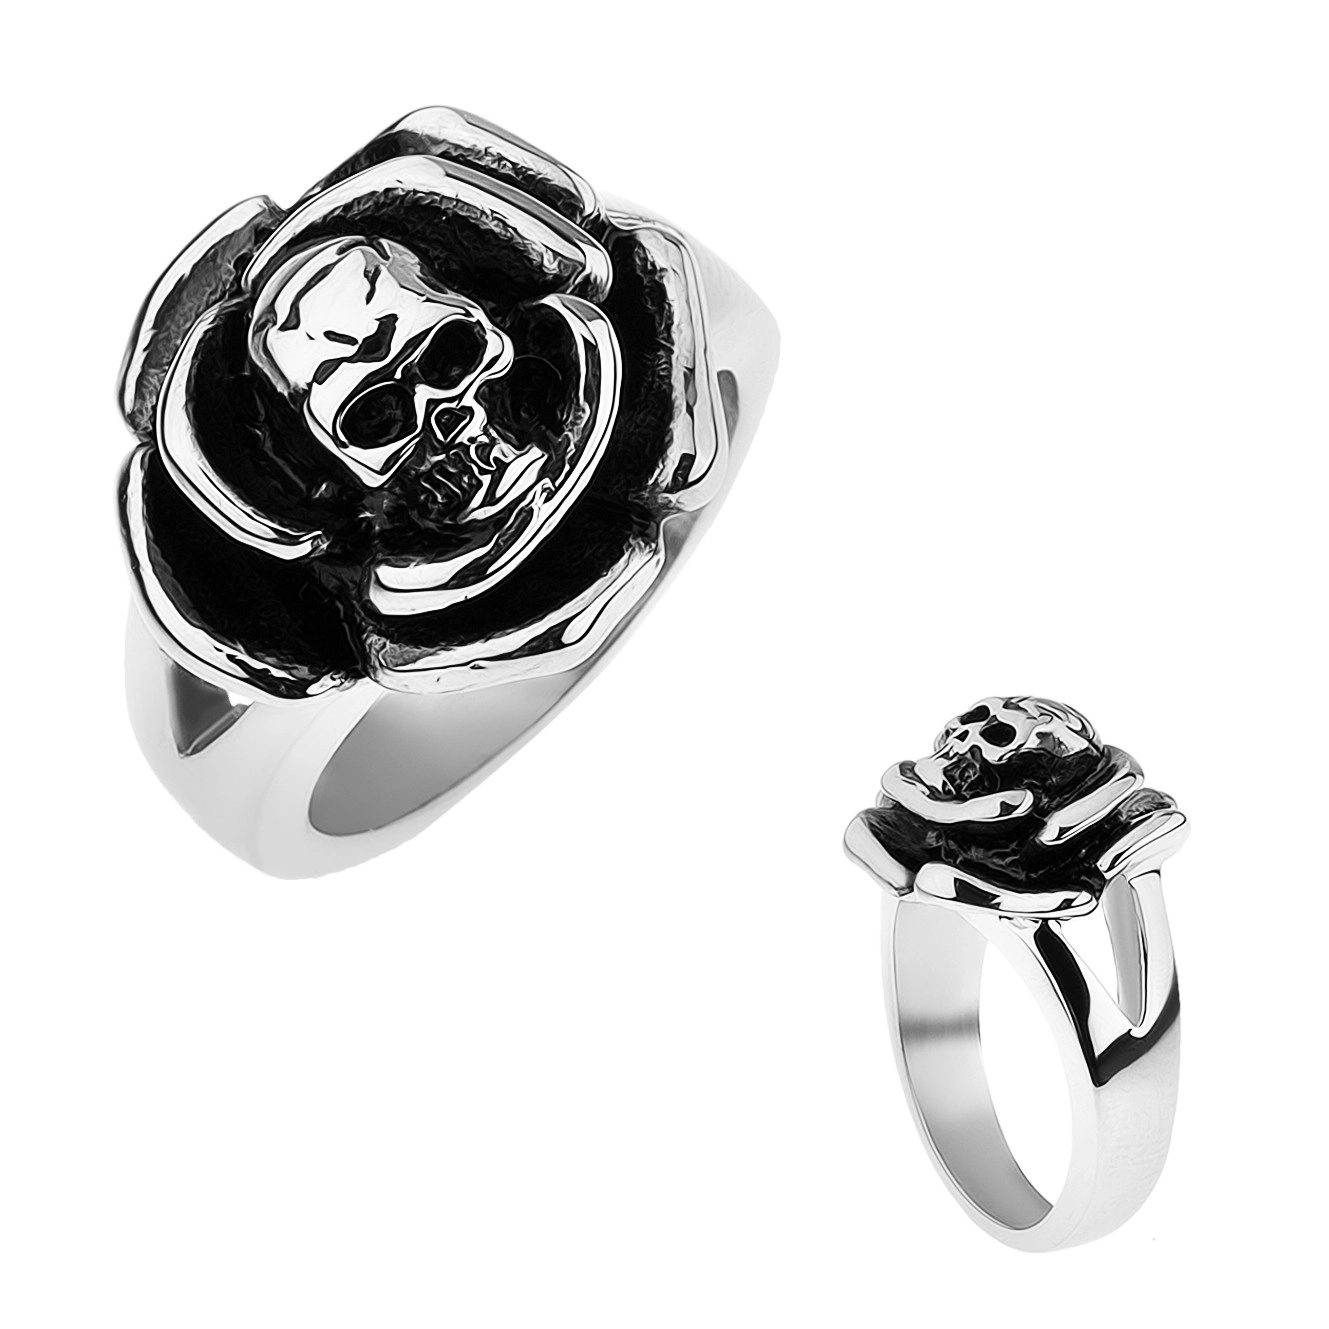 Patinovaný ocelový prsten, růže s lebkou uprostřed, rozdvojená ramena - Velikost: 57